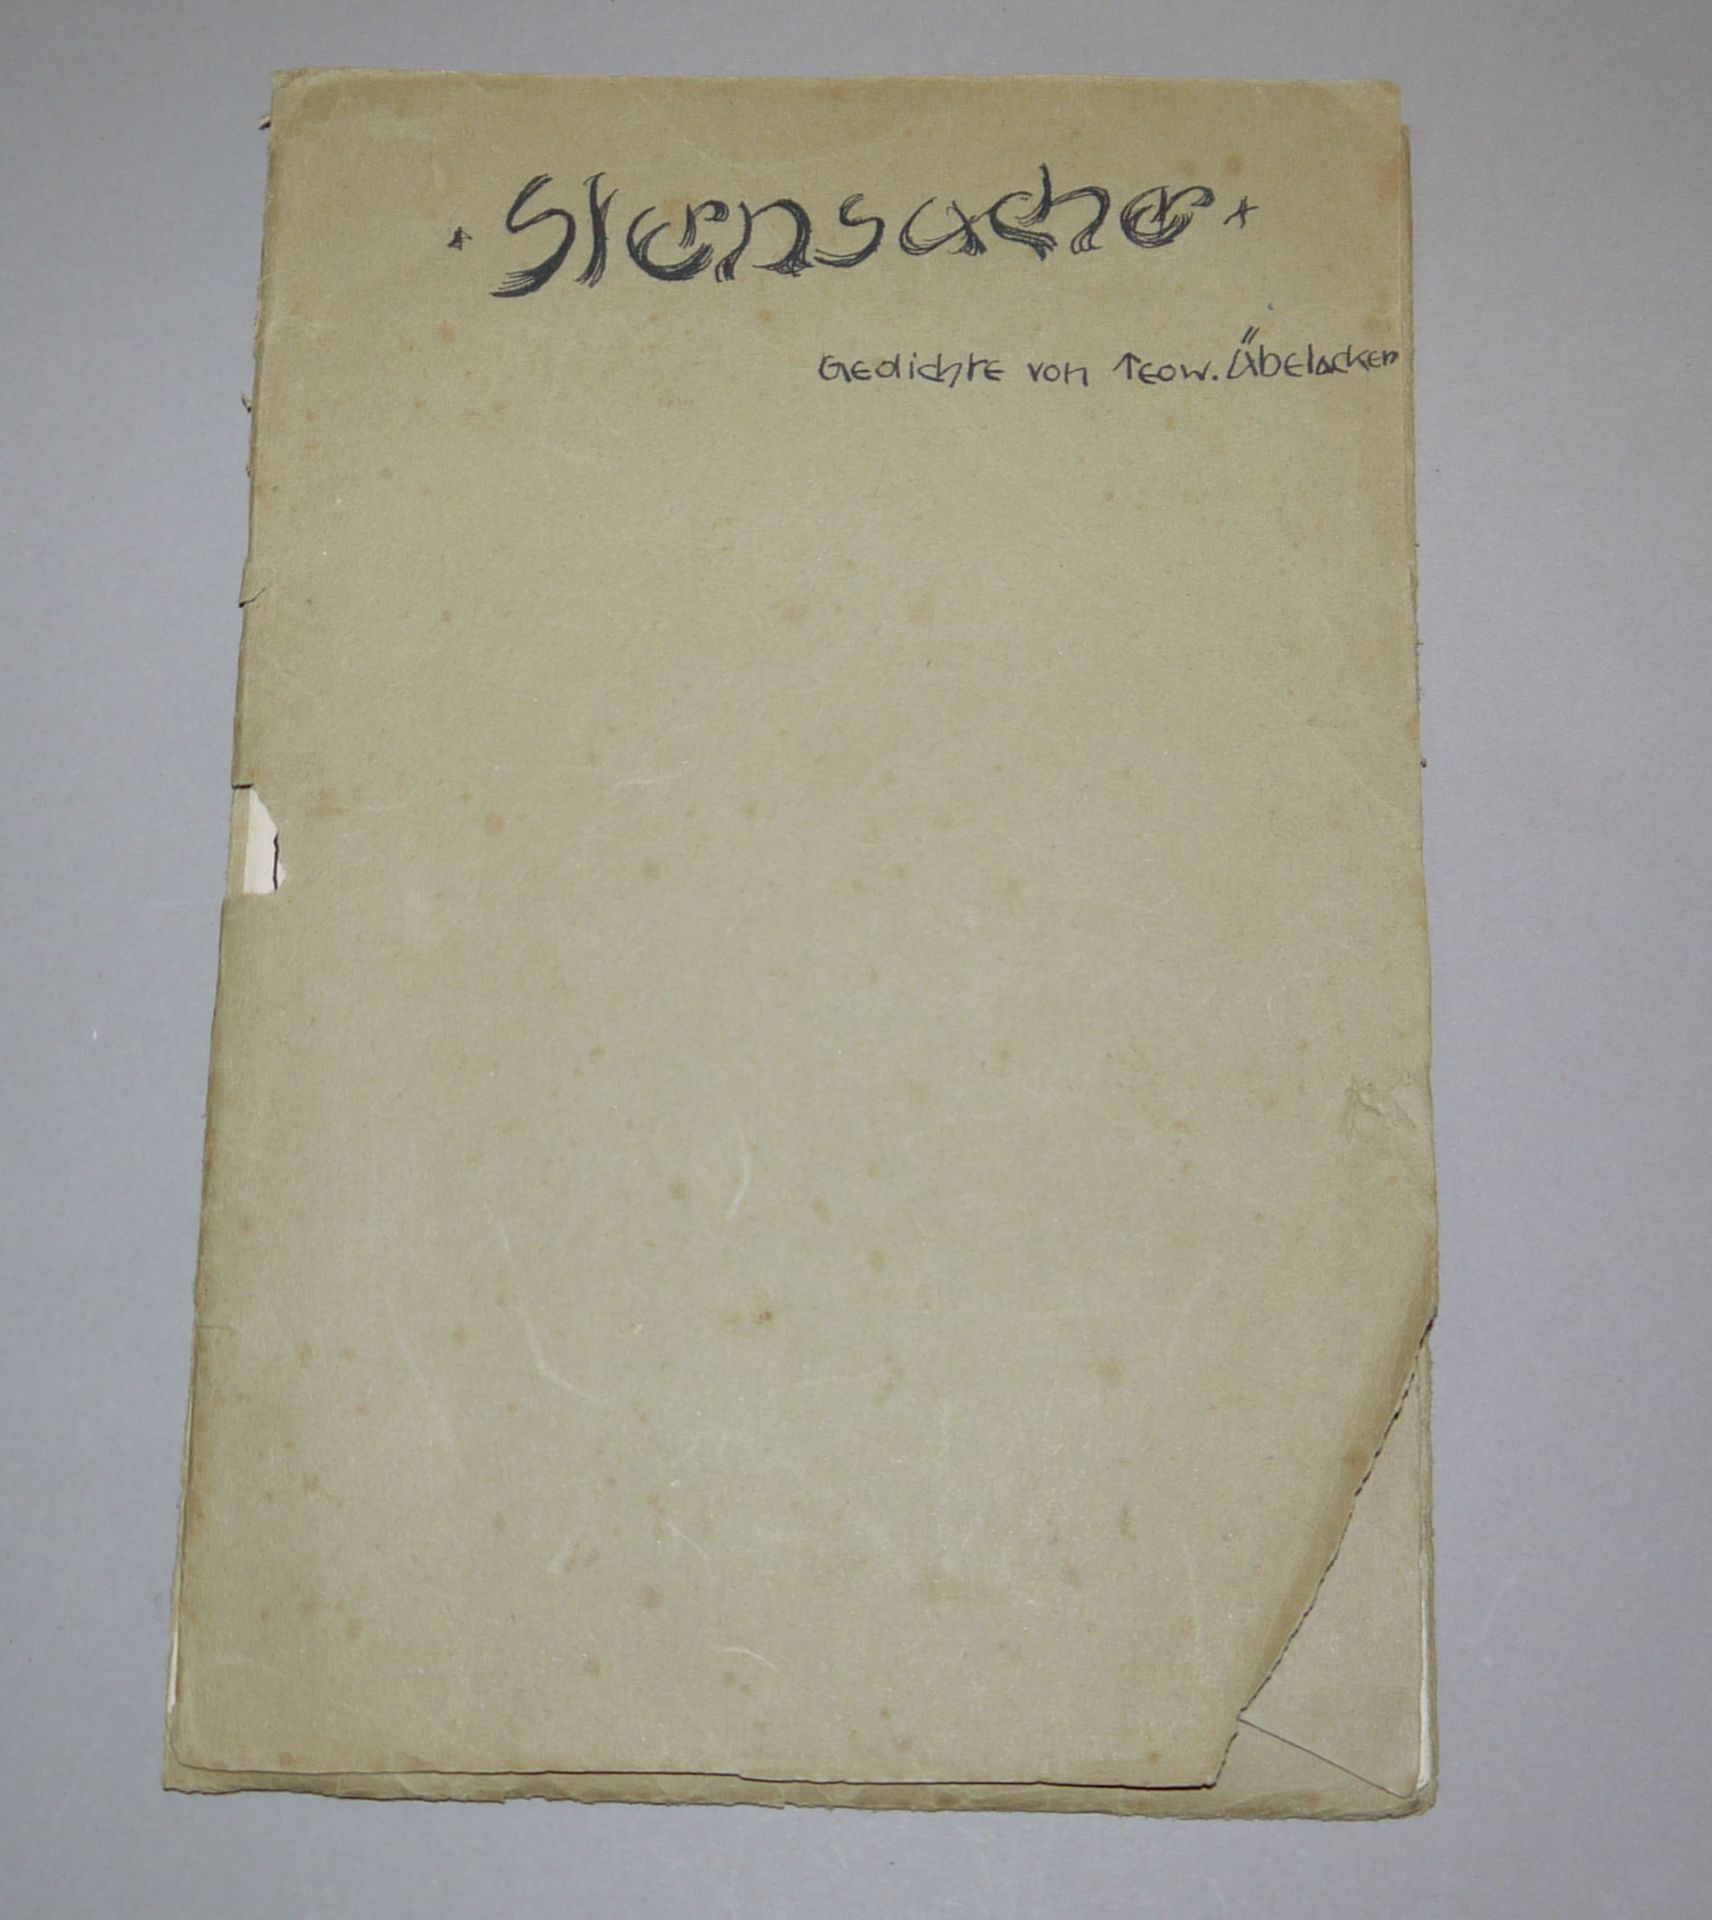 Fidus, 6 Originalzeichnungen in einer Gedichte-Mappe "Sternsache", rares Einzelstück um 1900 - Bild 2 aus 2